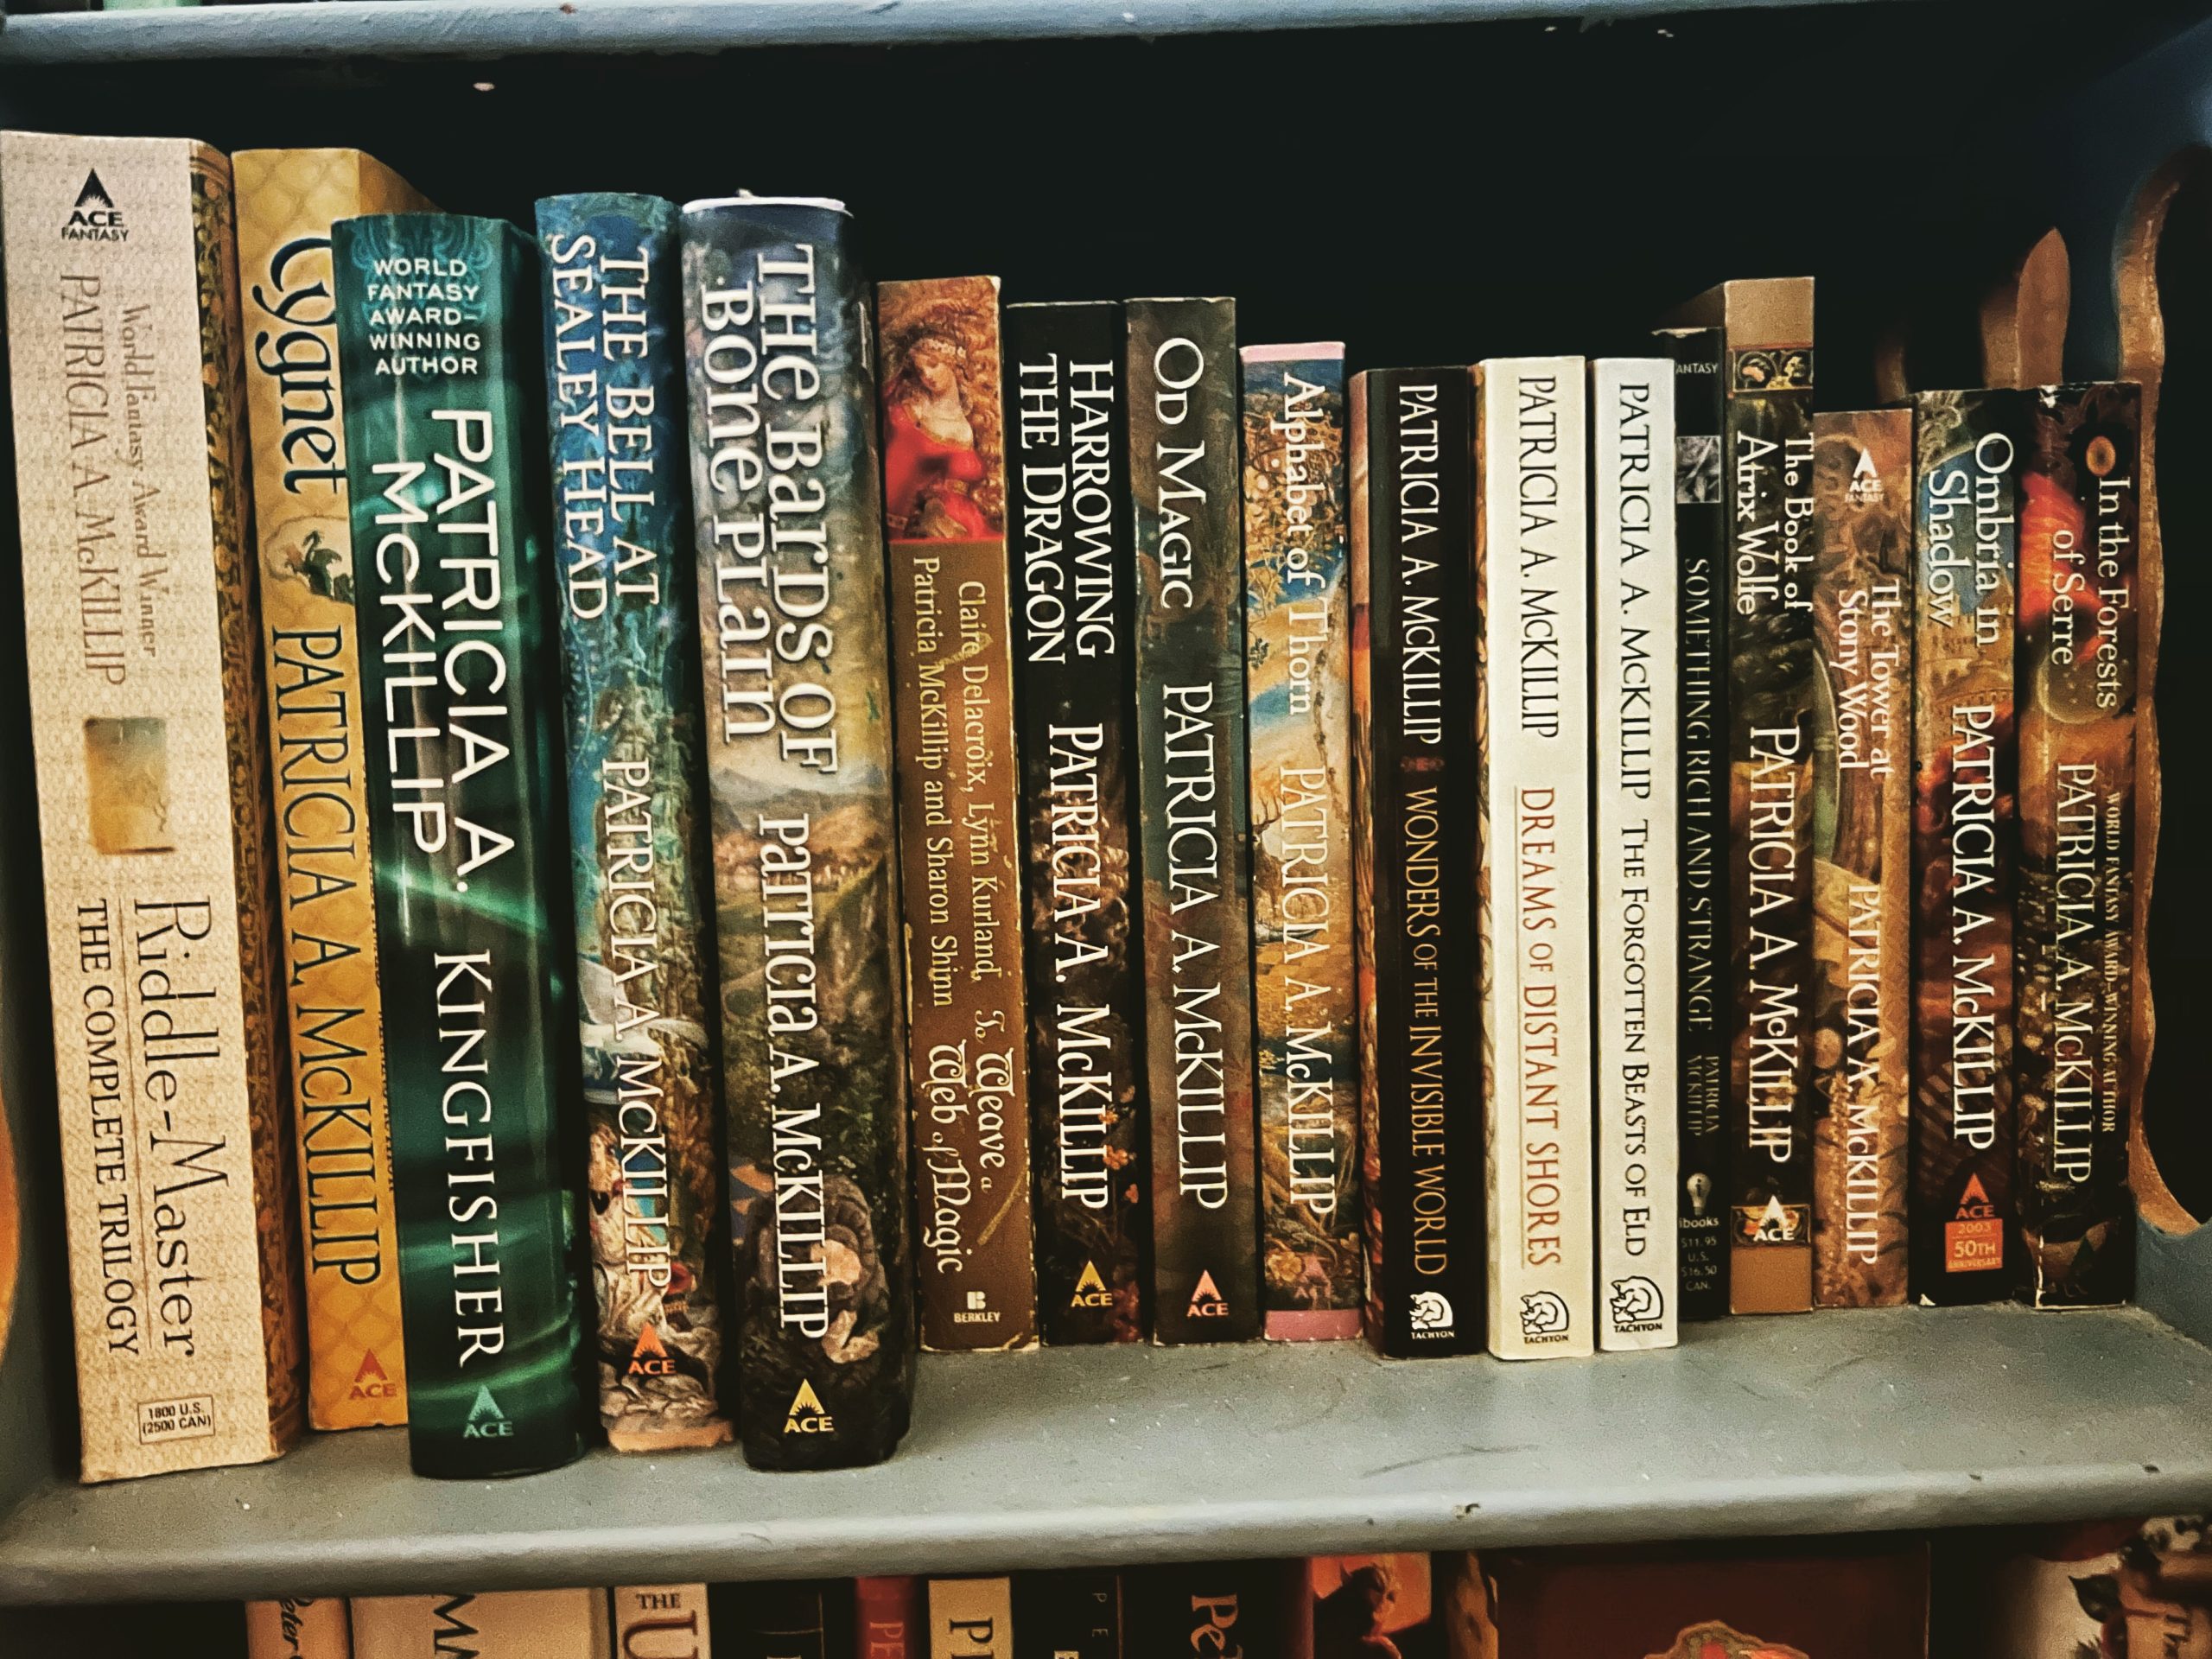 Bookshelf with all patrica k McKillip books